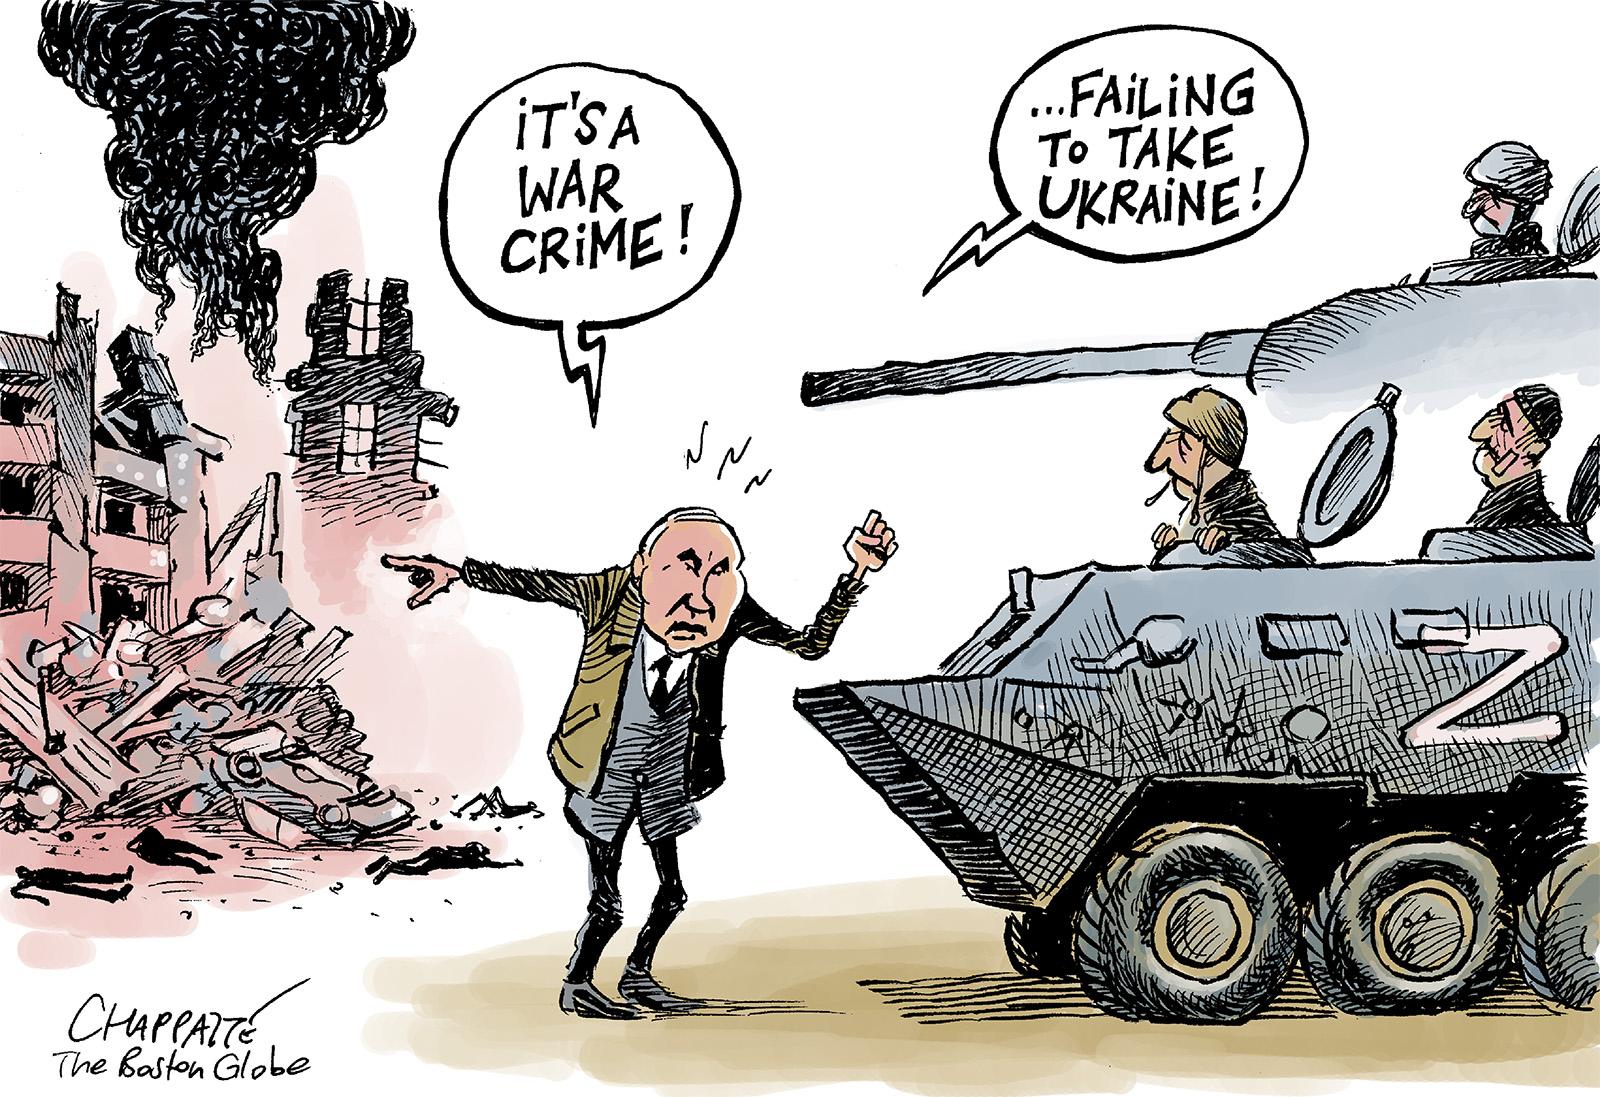 Putin the Terrible